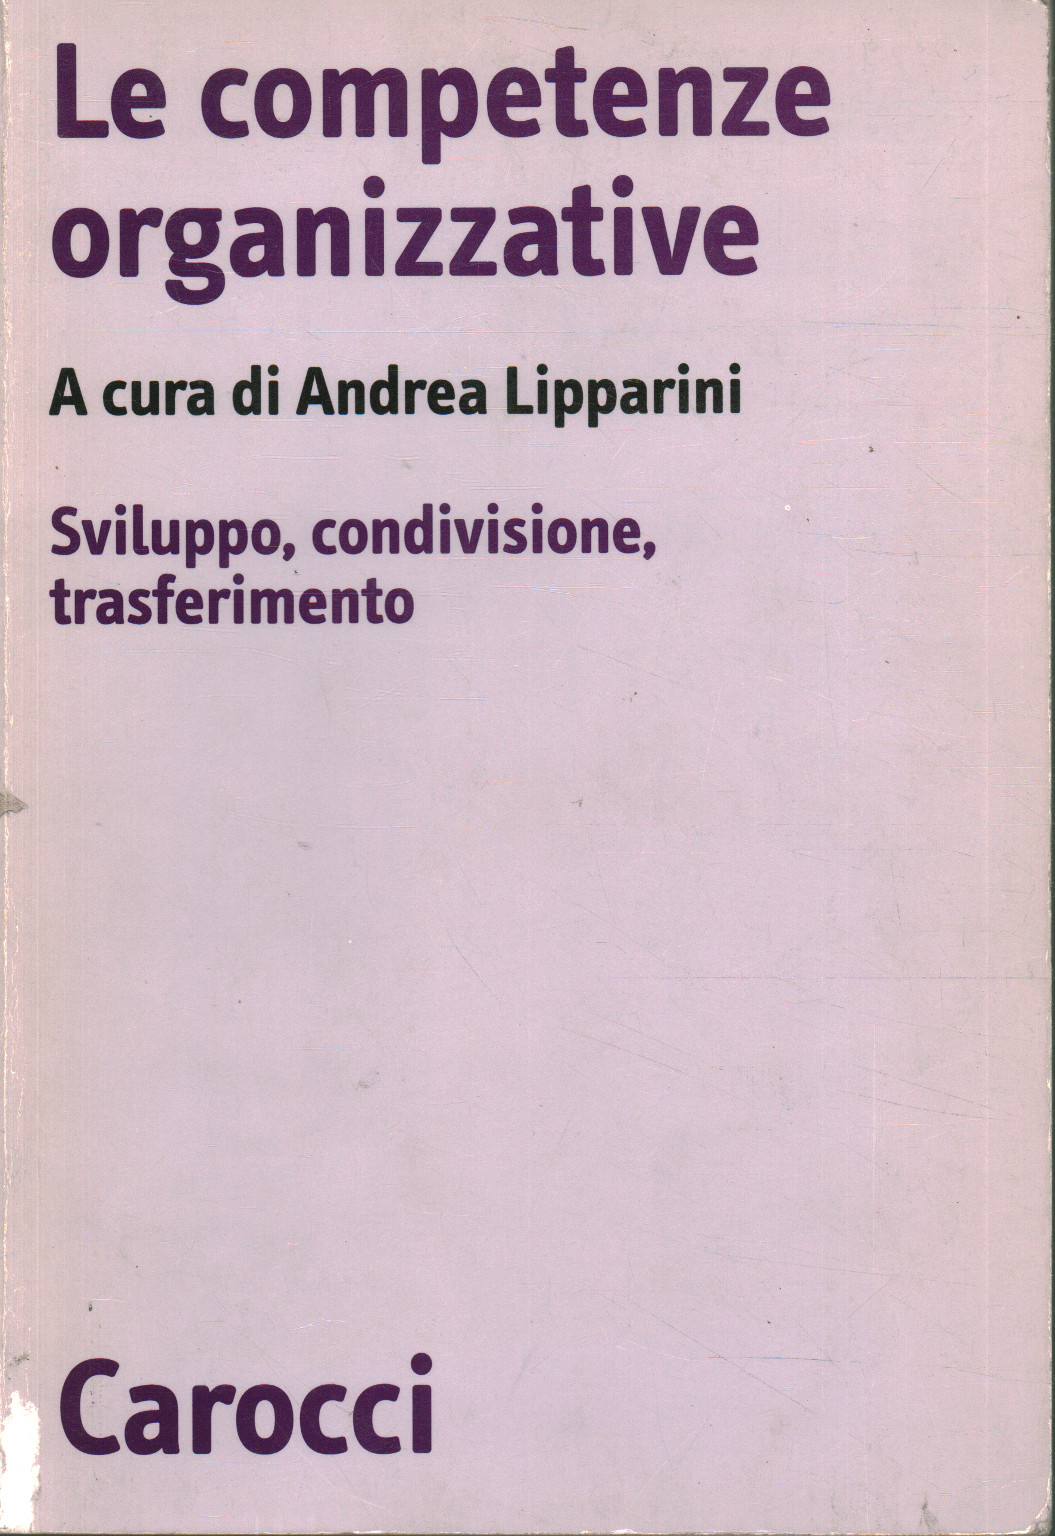 Le competenze organizzative, Andrea Lipparini